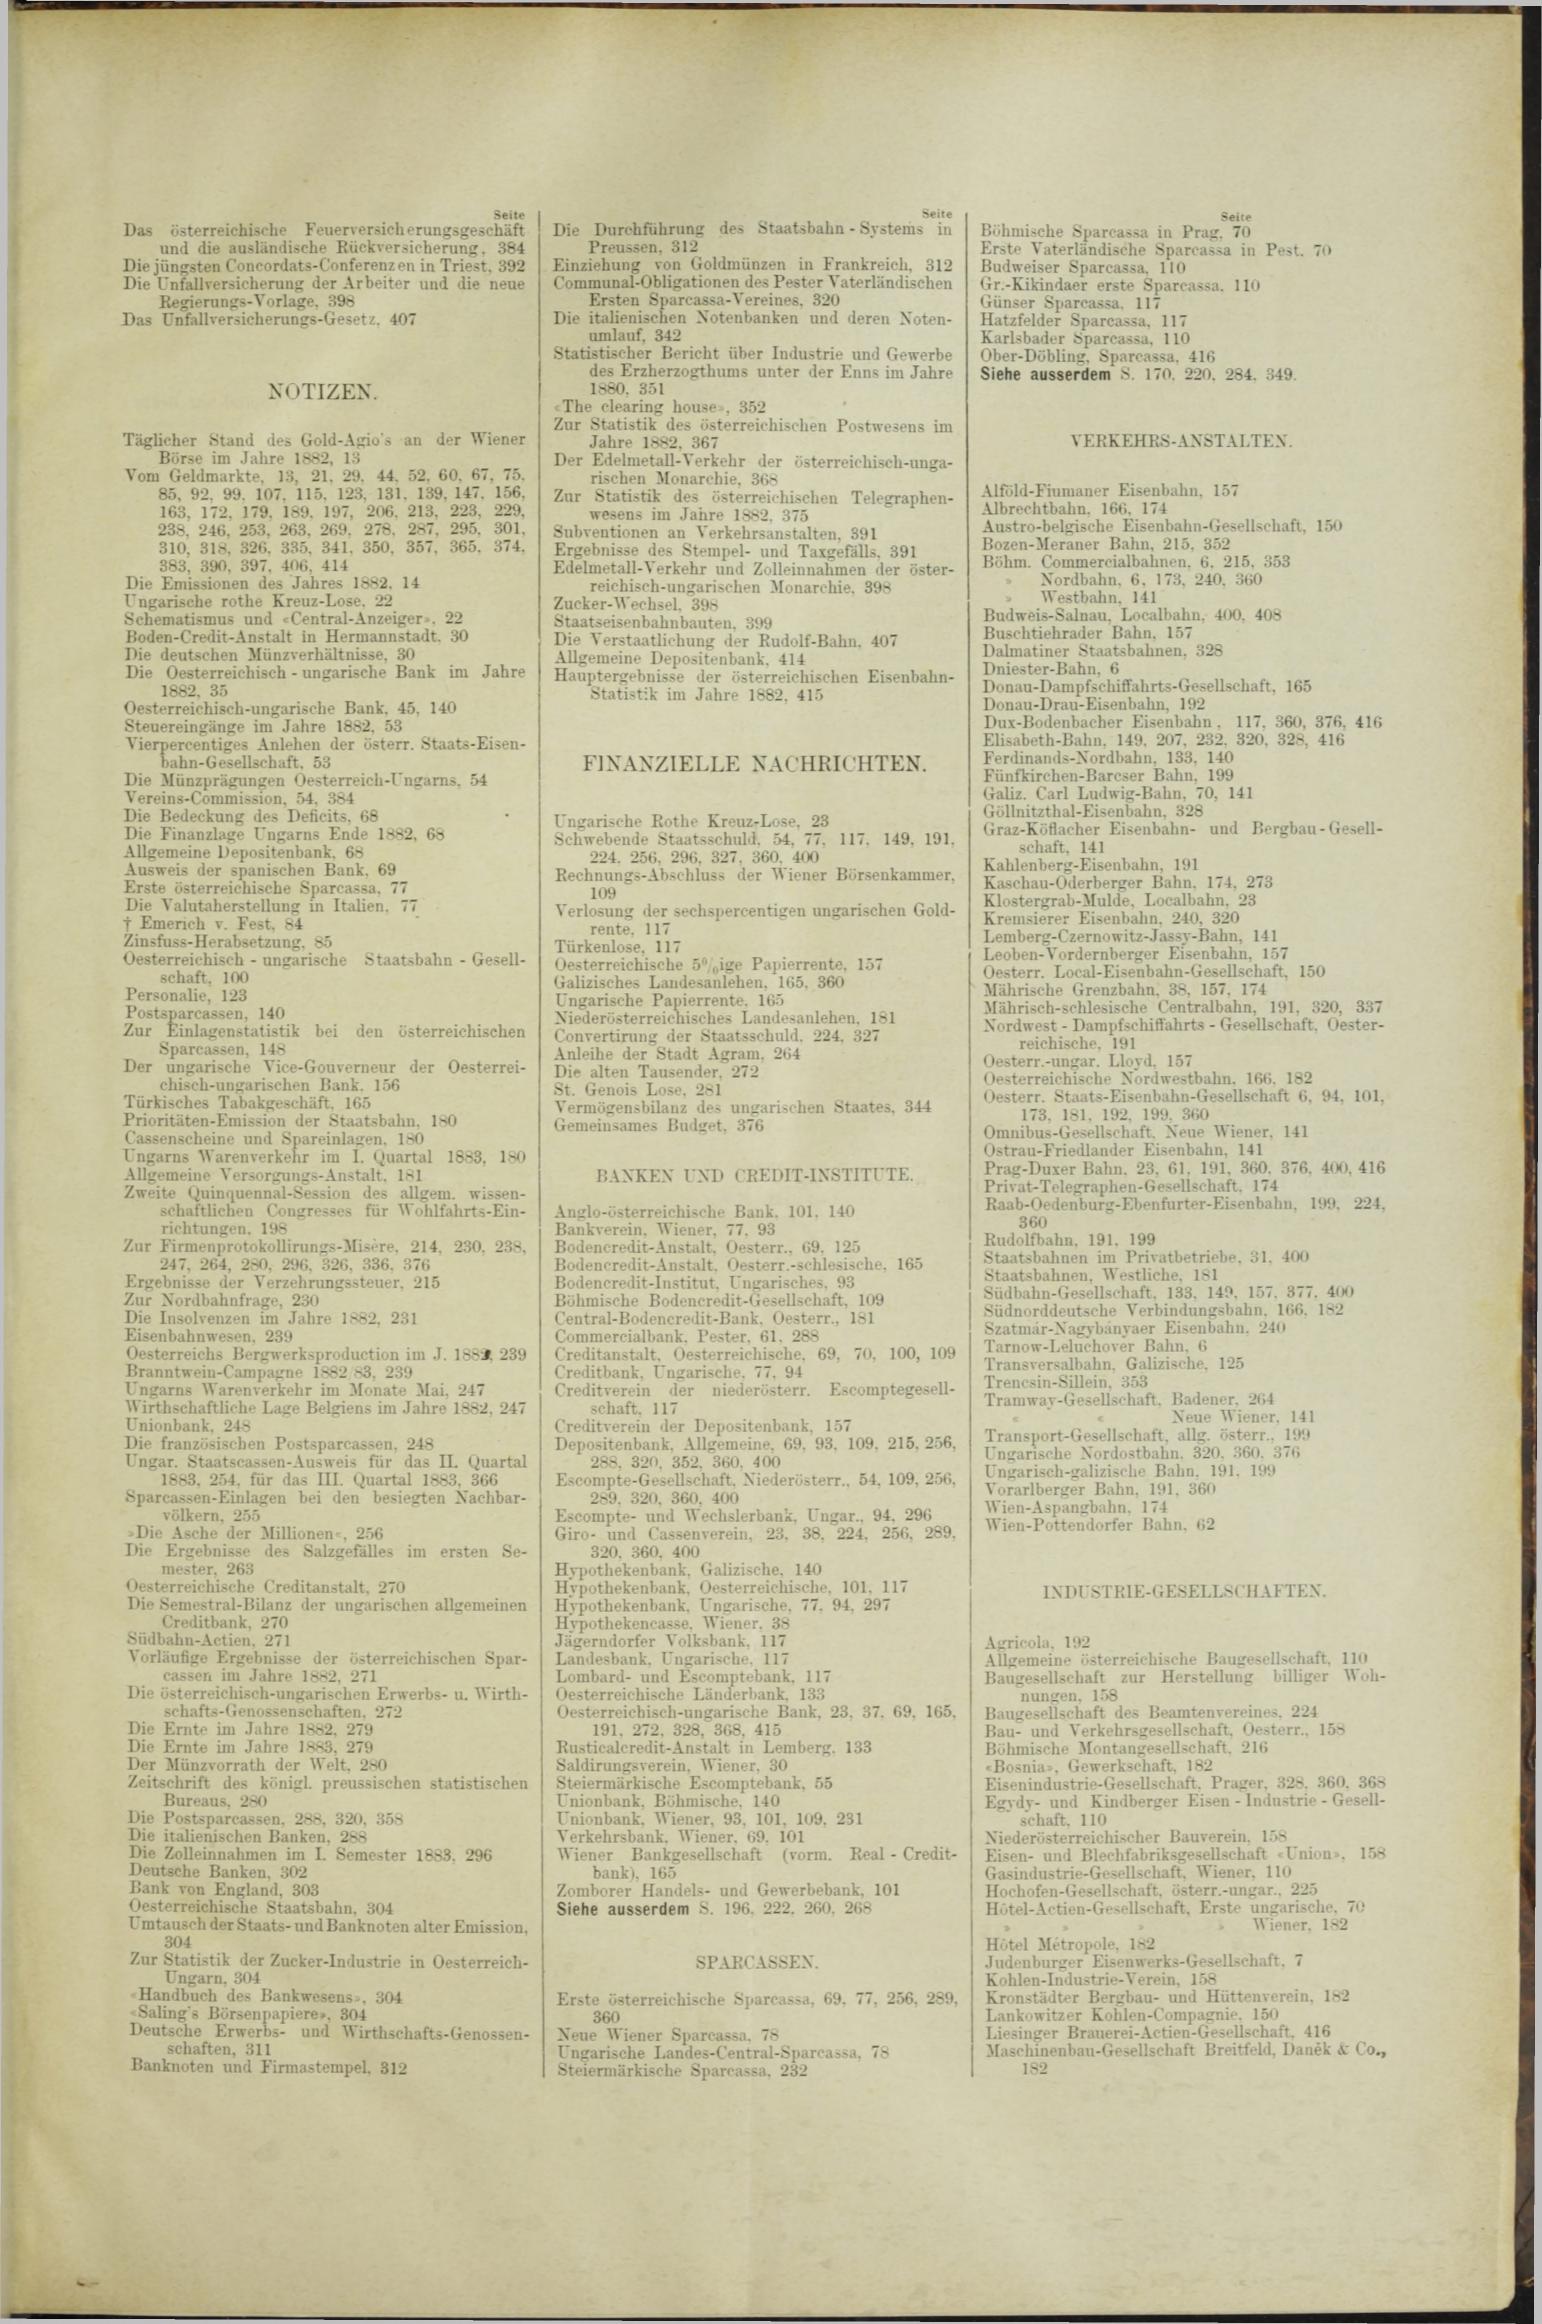 Der Tresor 12.07.1883 - Seite 11